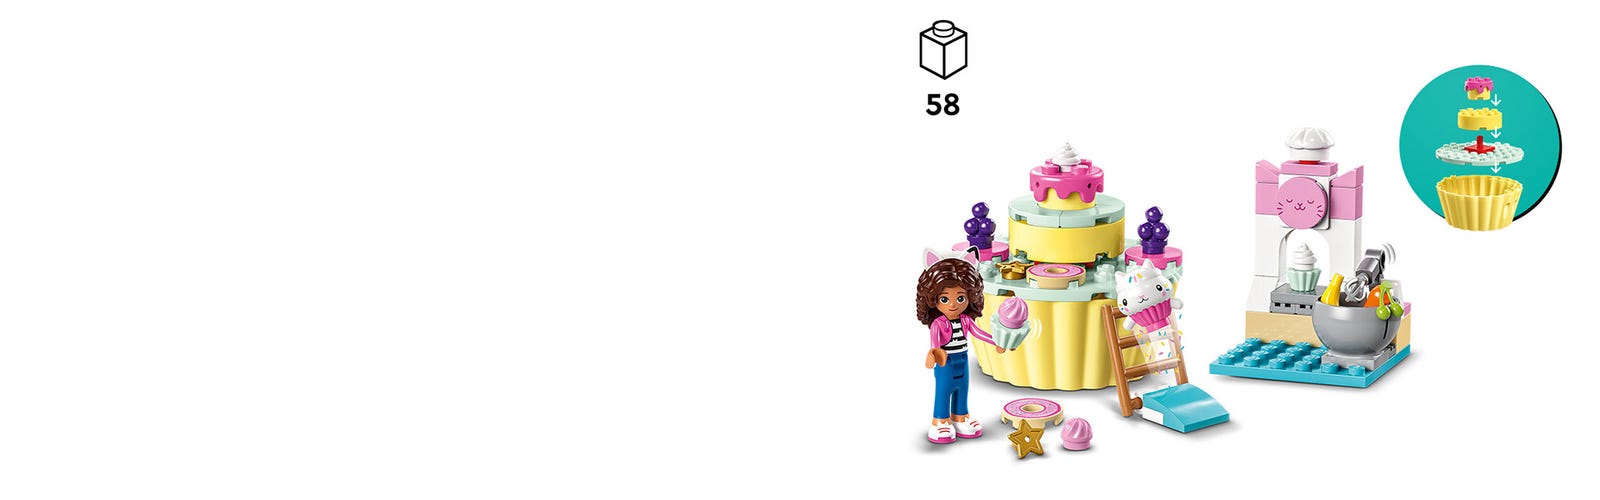 LEGO® Gabby et la Maison Magique 10785 Praline et P'tichou S'Amusent, Jouet  avec Figurines Chat